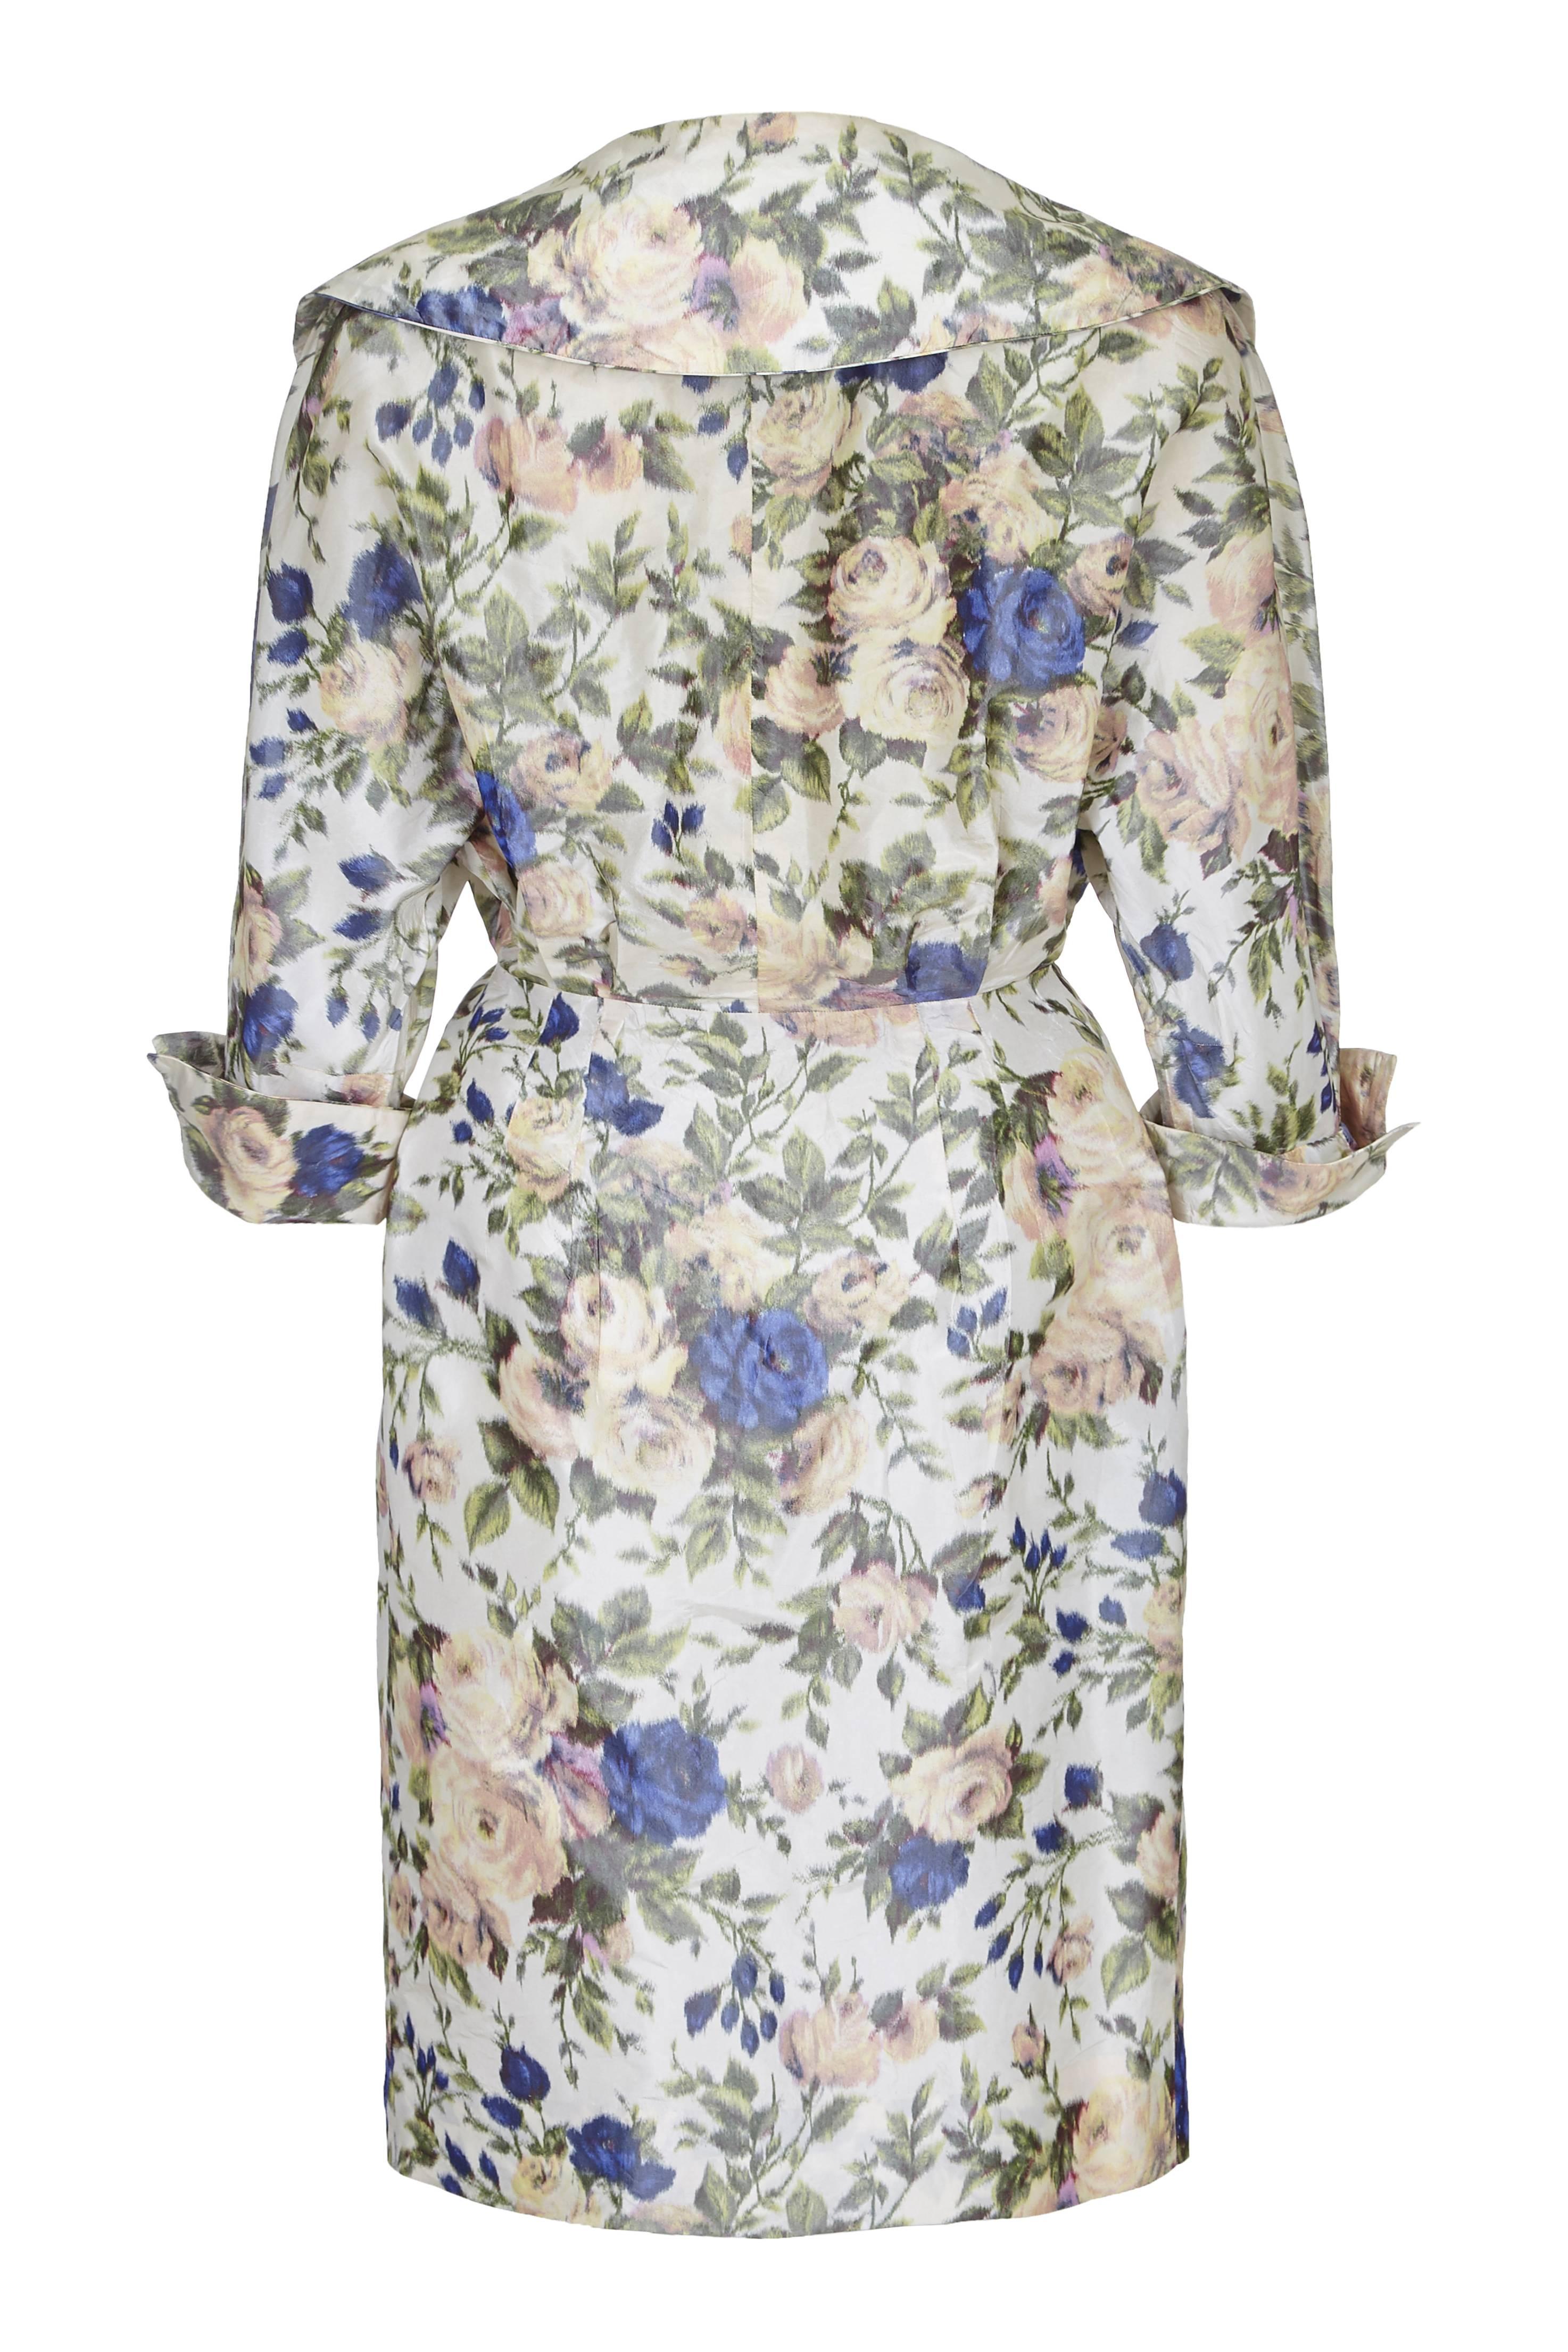 Cette élégante robe de couture française des années 1950 en taffetas de soie imprimé de roses a un style classique des années 1950 